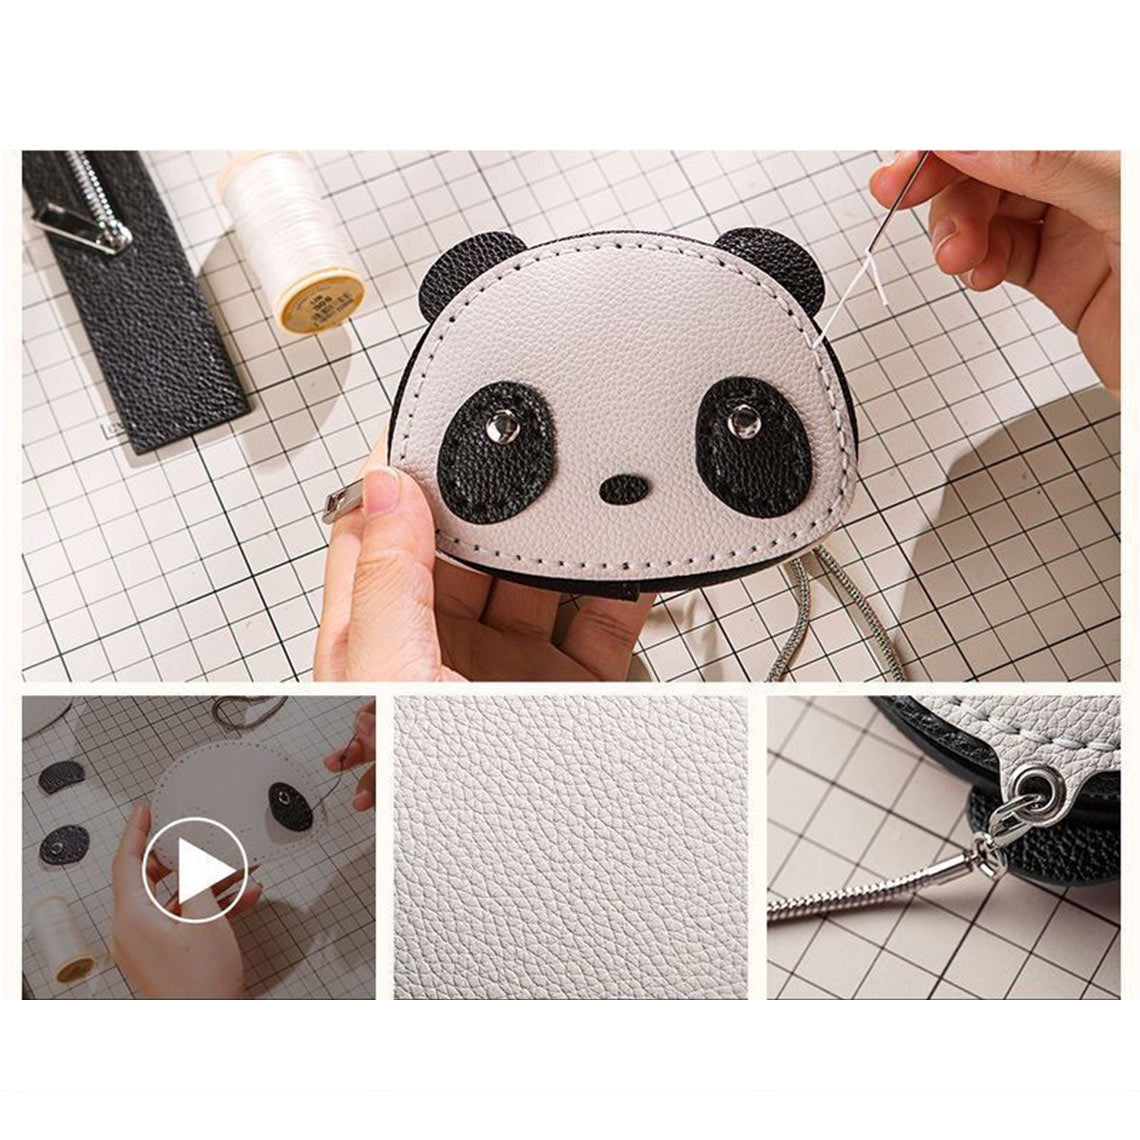 POPSEWING™ Leather Panda Wallet DIY Kit | How to Make Panda wallet